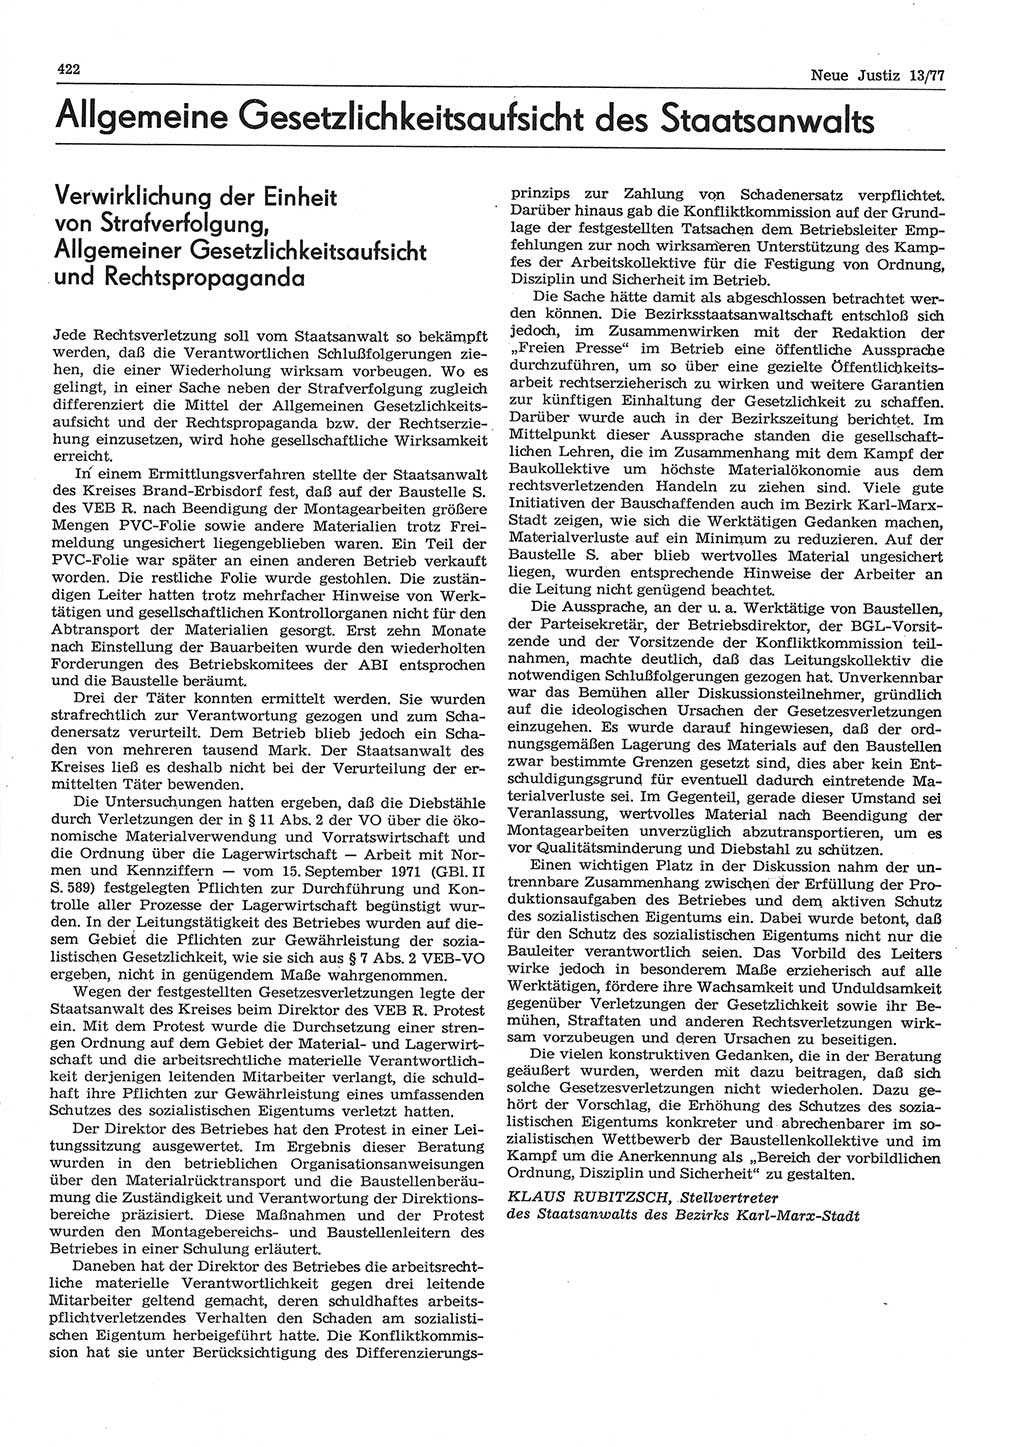 Neue Justiz (NJ), Zeitschrift für Recht und Rechtswissenschaft-Zeitschrift, sozialistisches Recht und Gesetzlichkeit, 31. Jahrgang 1977, Seite 422 (NJ DDR 1977, S. 422)